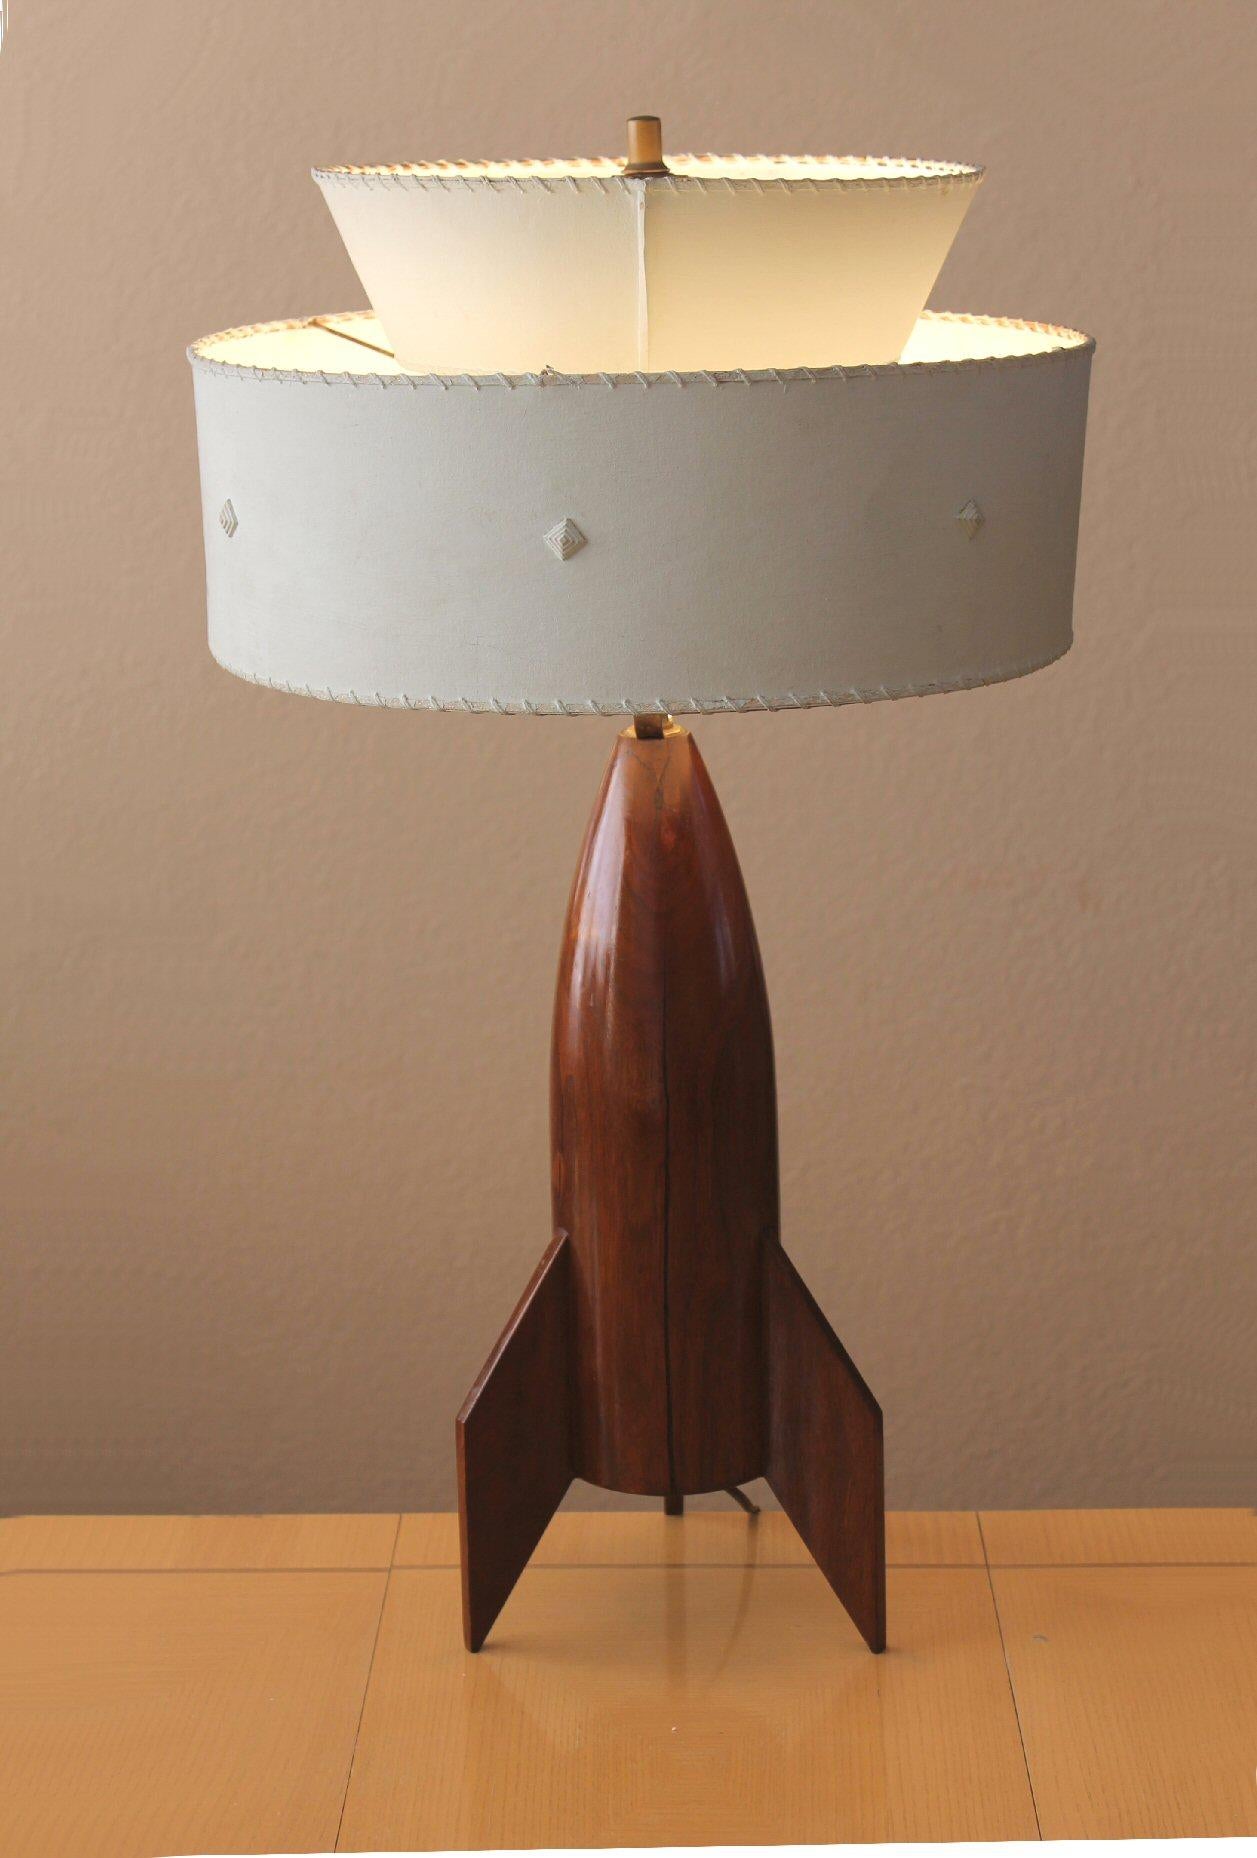 Erstaunlich!

Die ultimative Raketenschiff-Lampe!

Mid Century Hand geschnitzt Mahagoni
Raketenschiff Tischlampe

Handbemalter Fiberglas-Schirm

1953

Dies ist die schönste und beeindruckendste Raketenschiff-Lampe der Welt!  Das schlichte Design